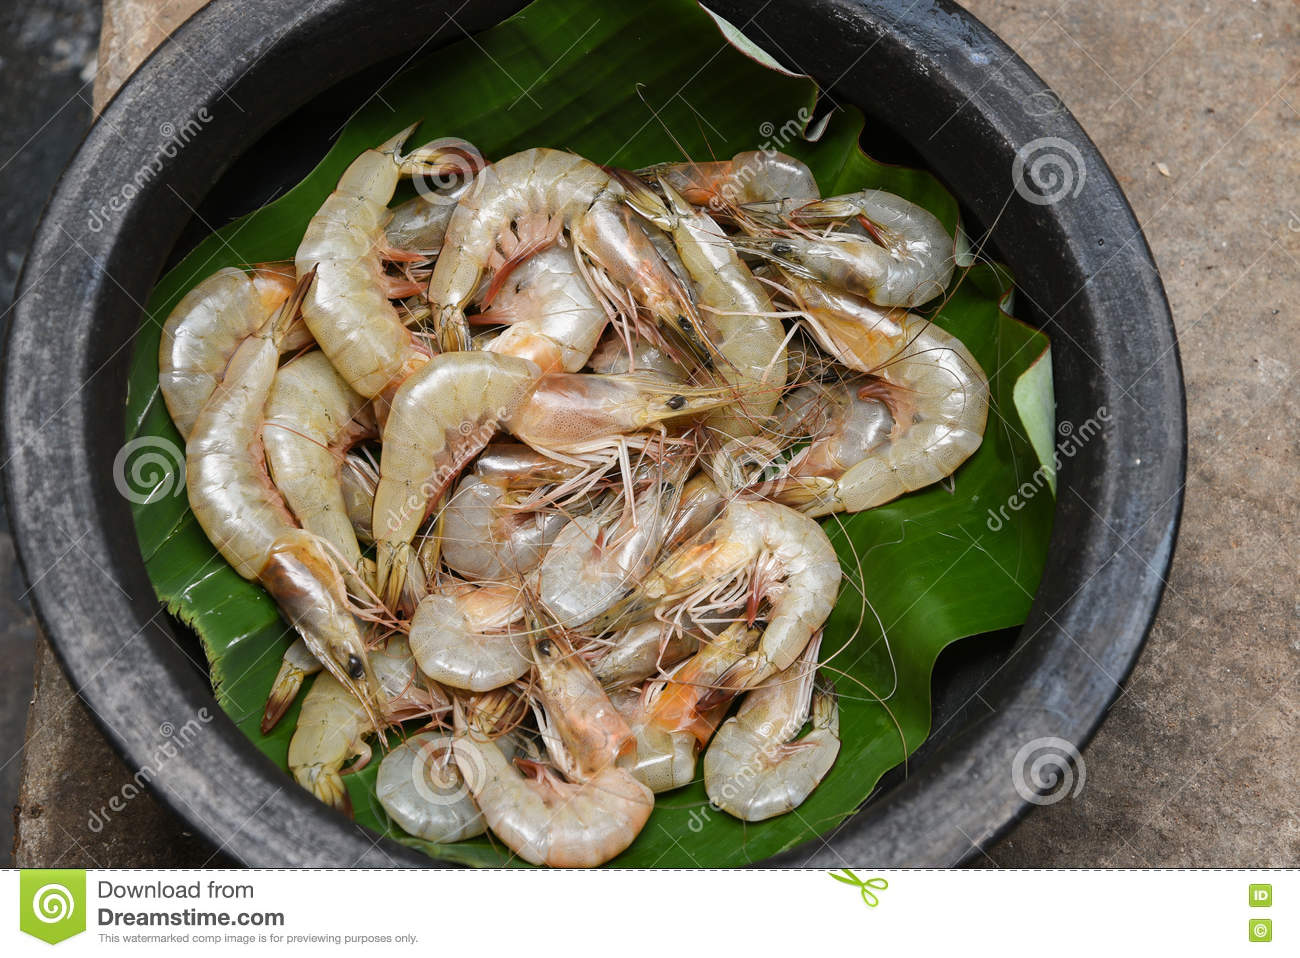 Ressources halieutique : le Gabon va évaluer son stock de crevettes côtières